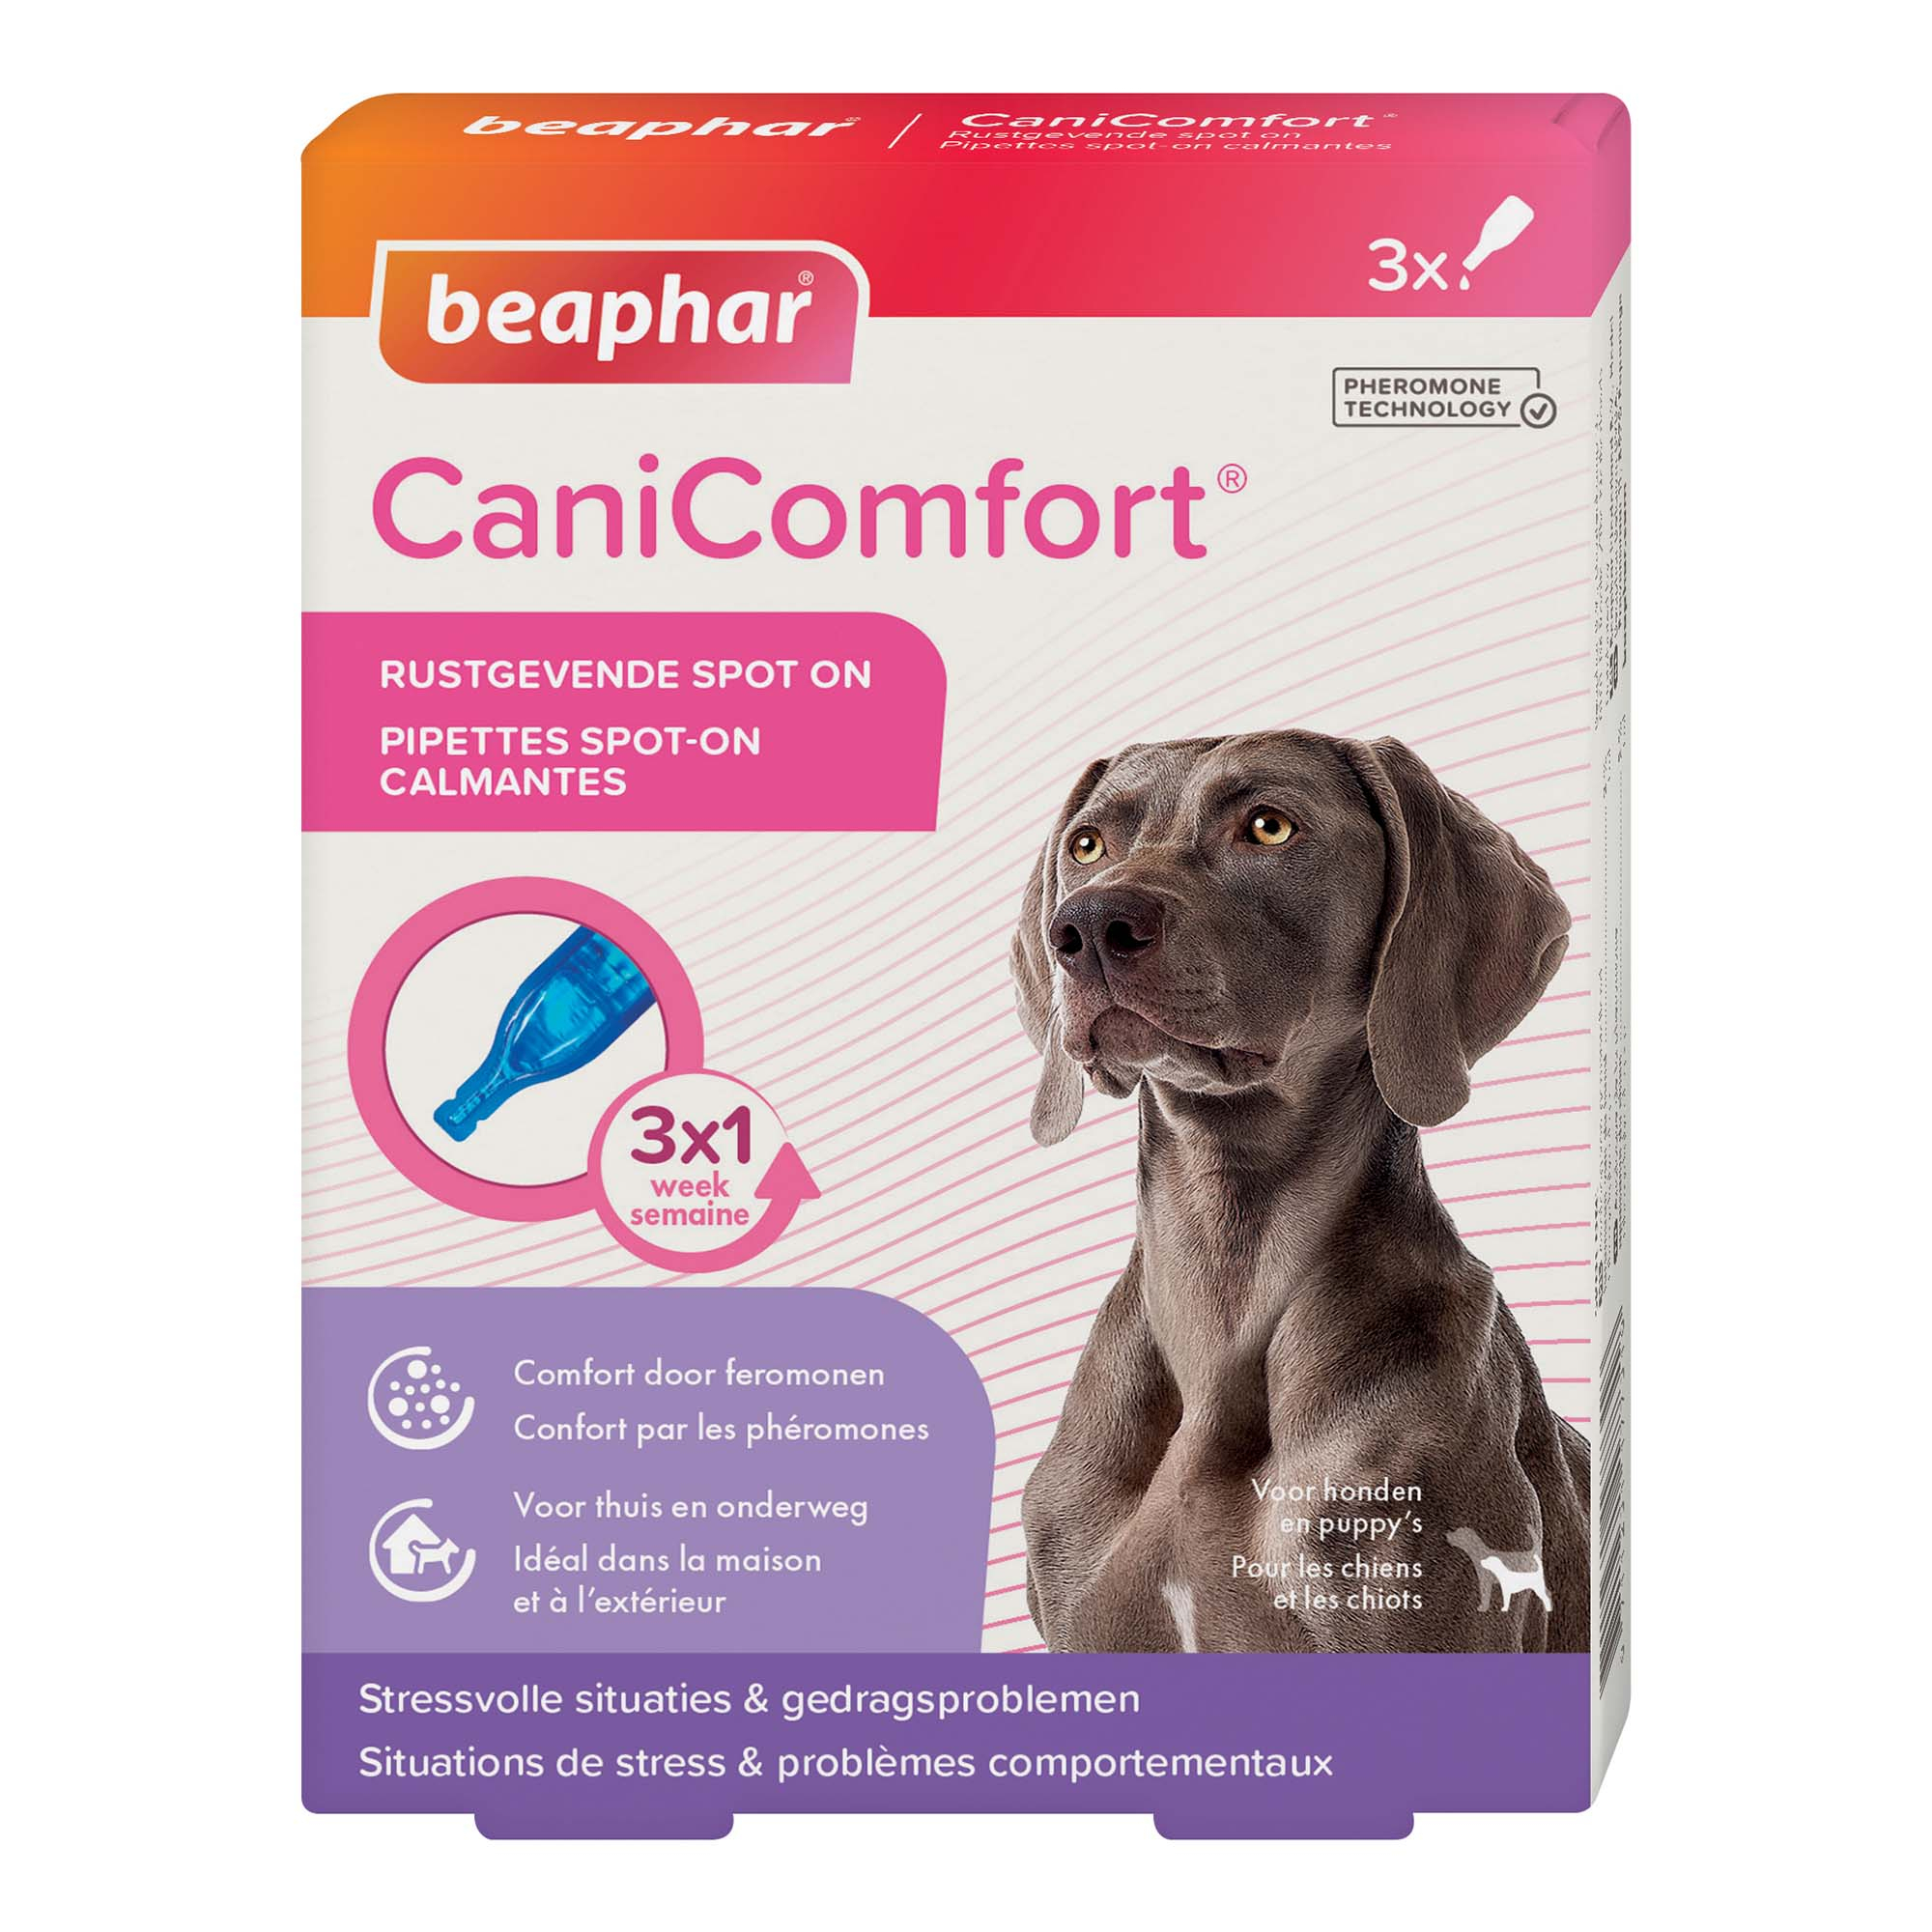 CaniComfort Pipettes calmantes aux phéromones pour chien et chiot